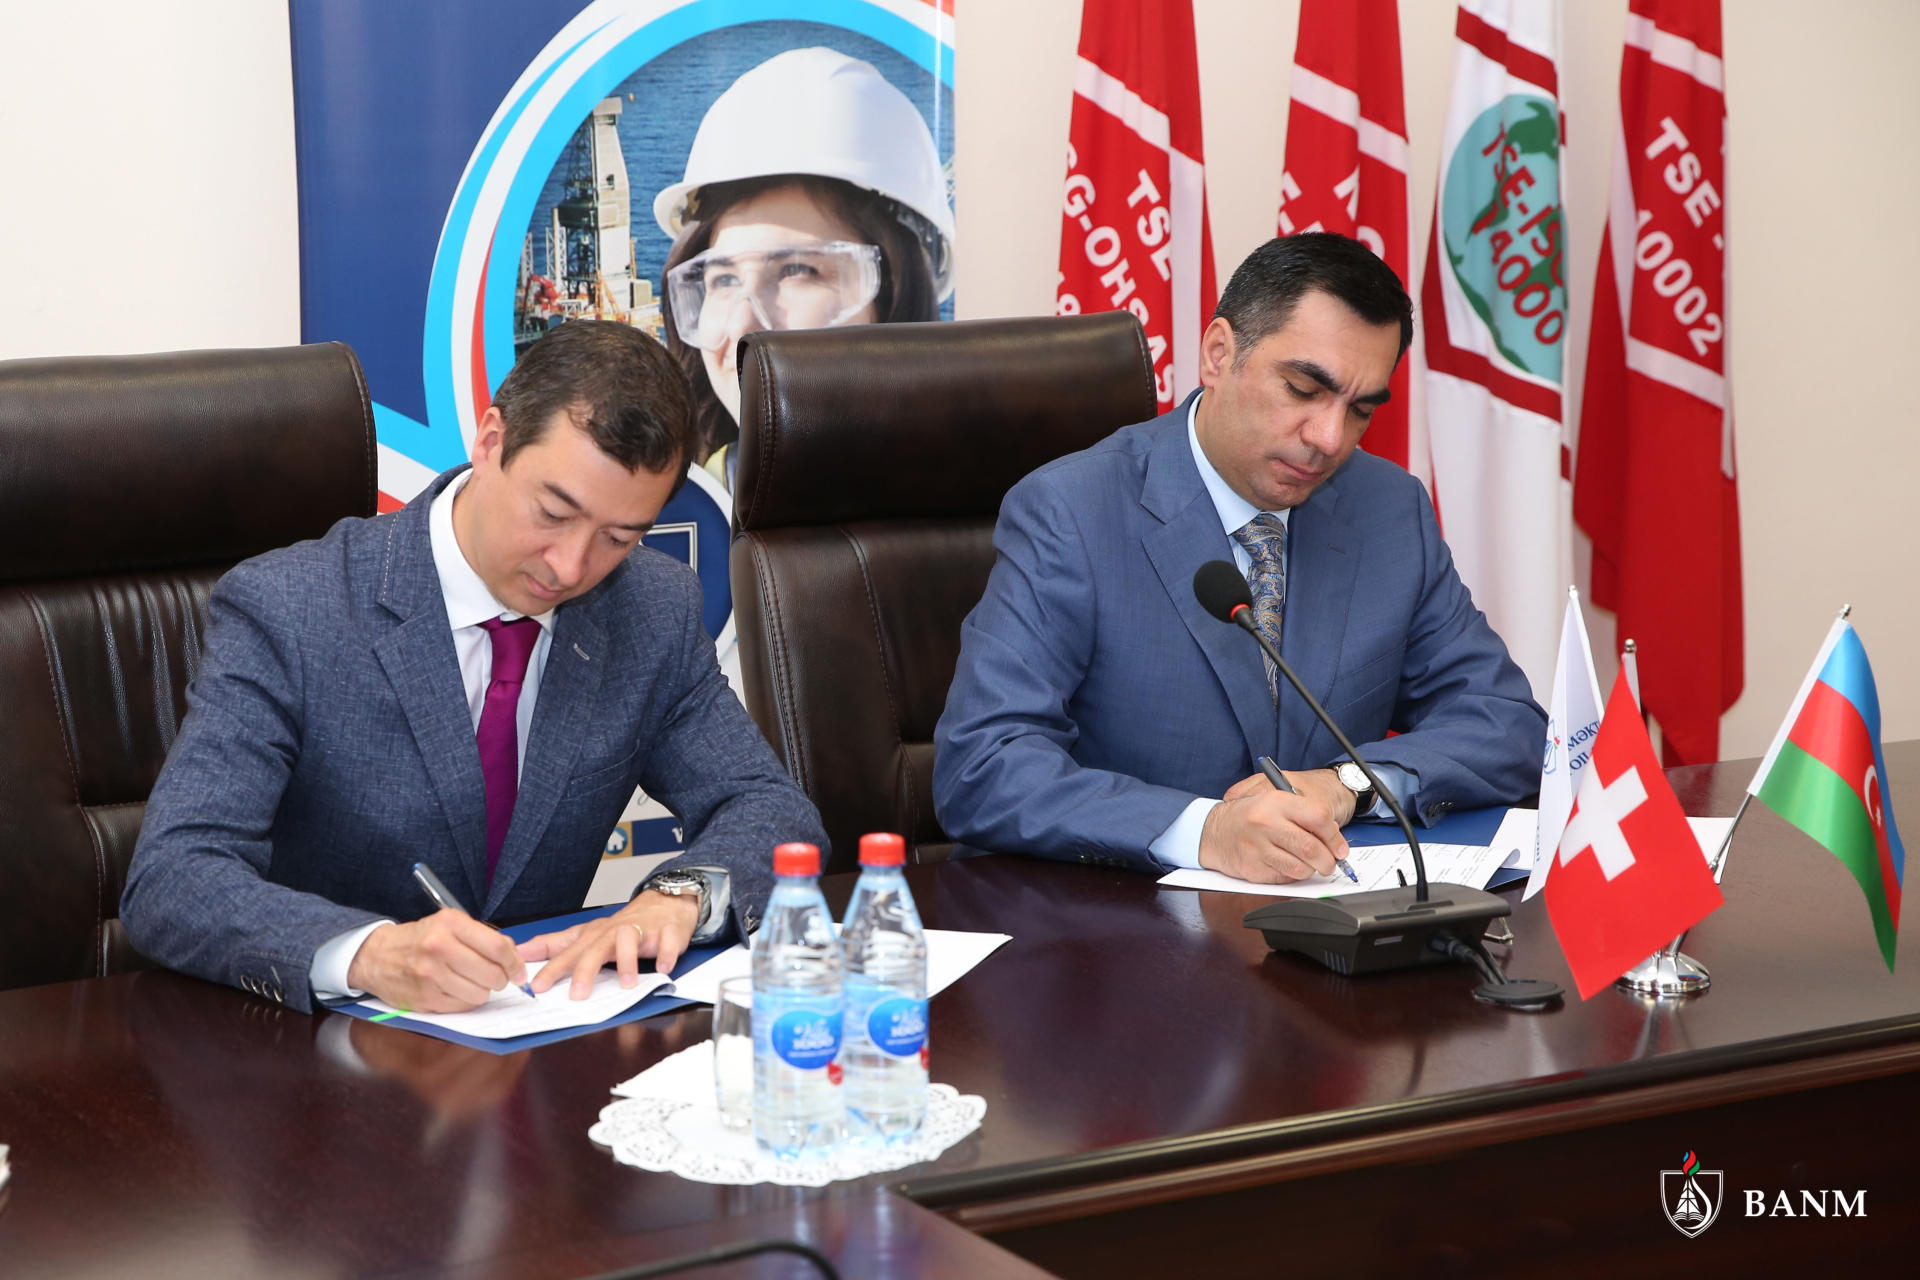 Baku Higher Oil School & Geneva Business School sign Memorandum of Understanding